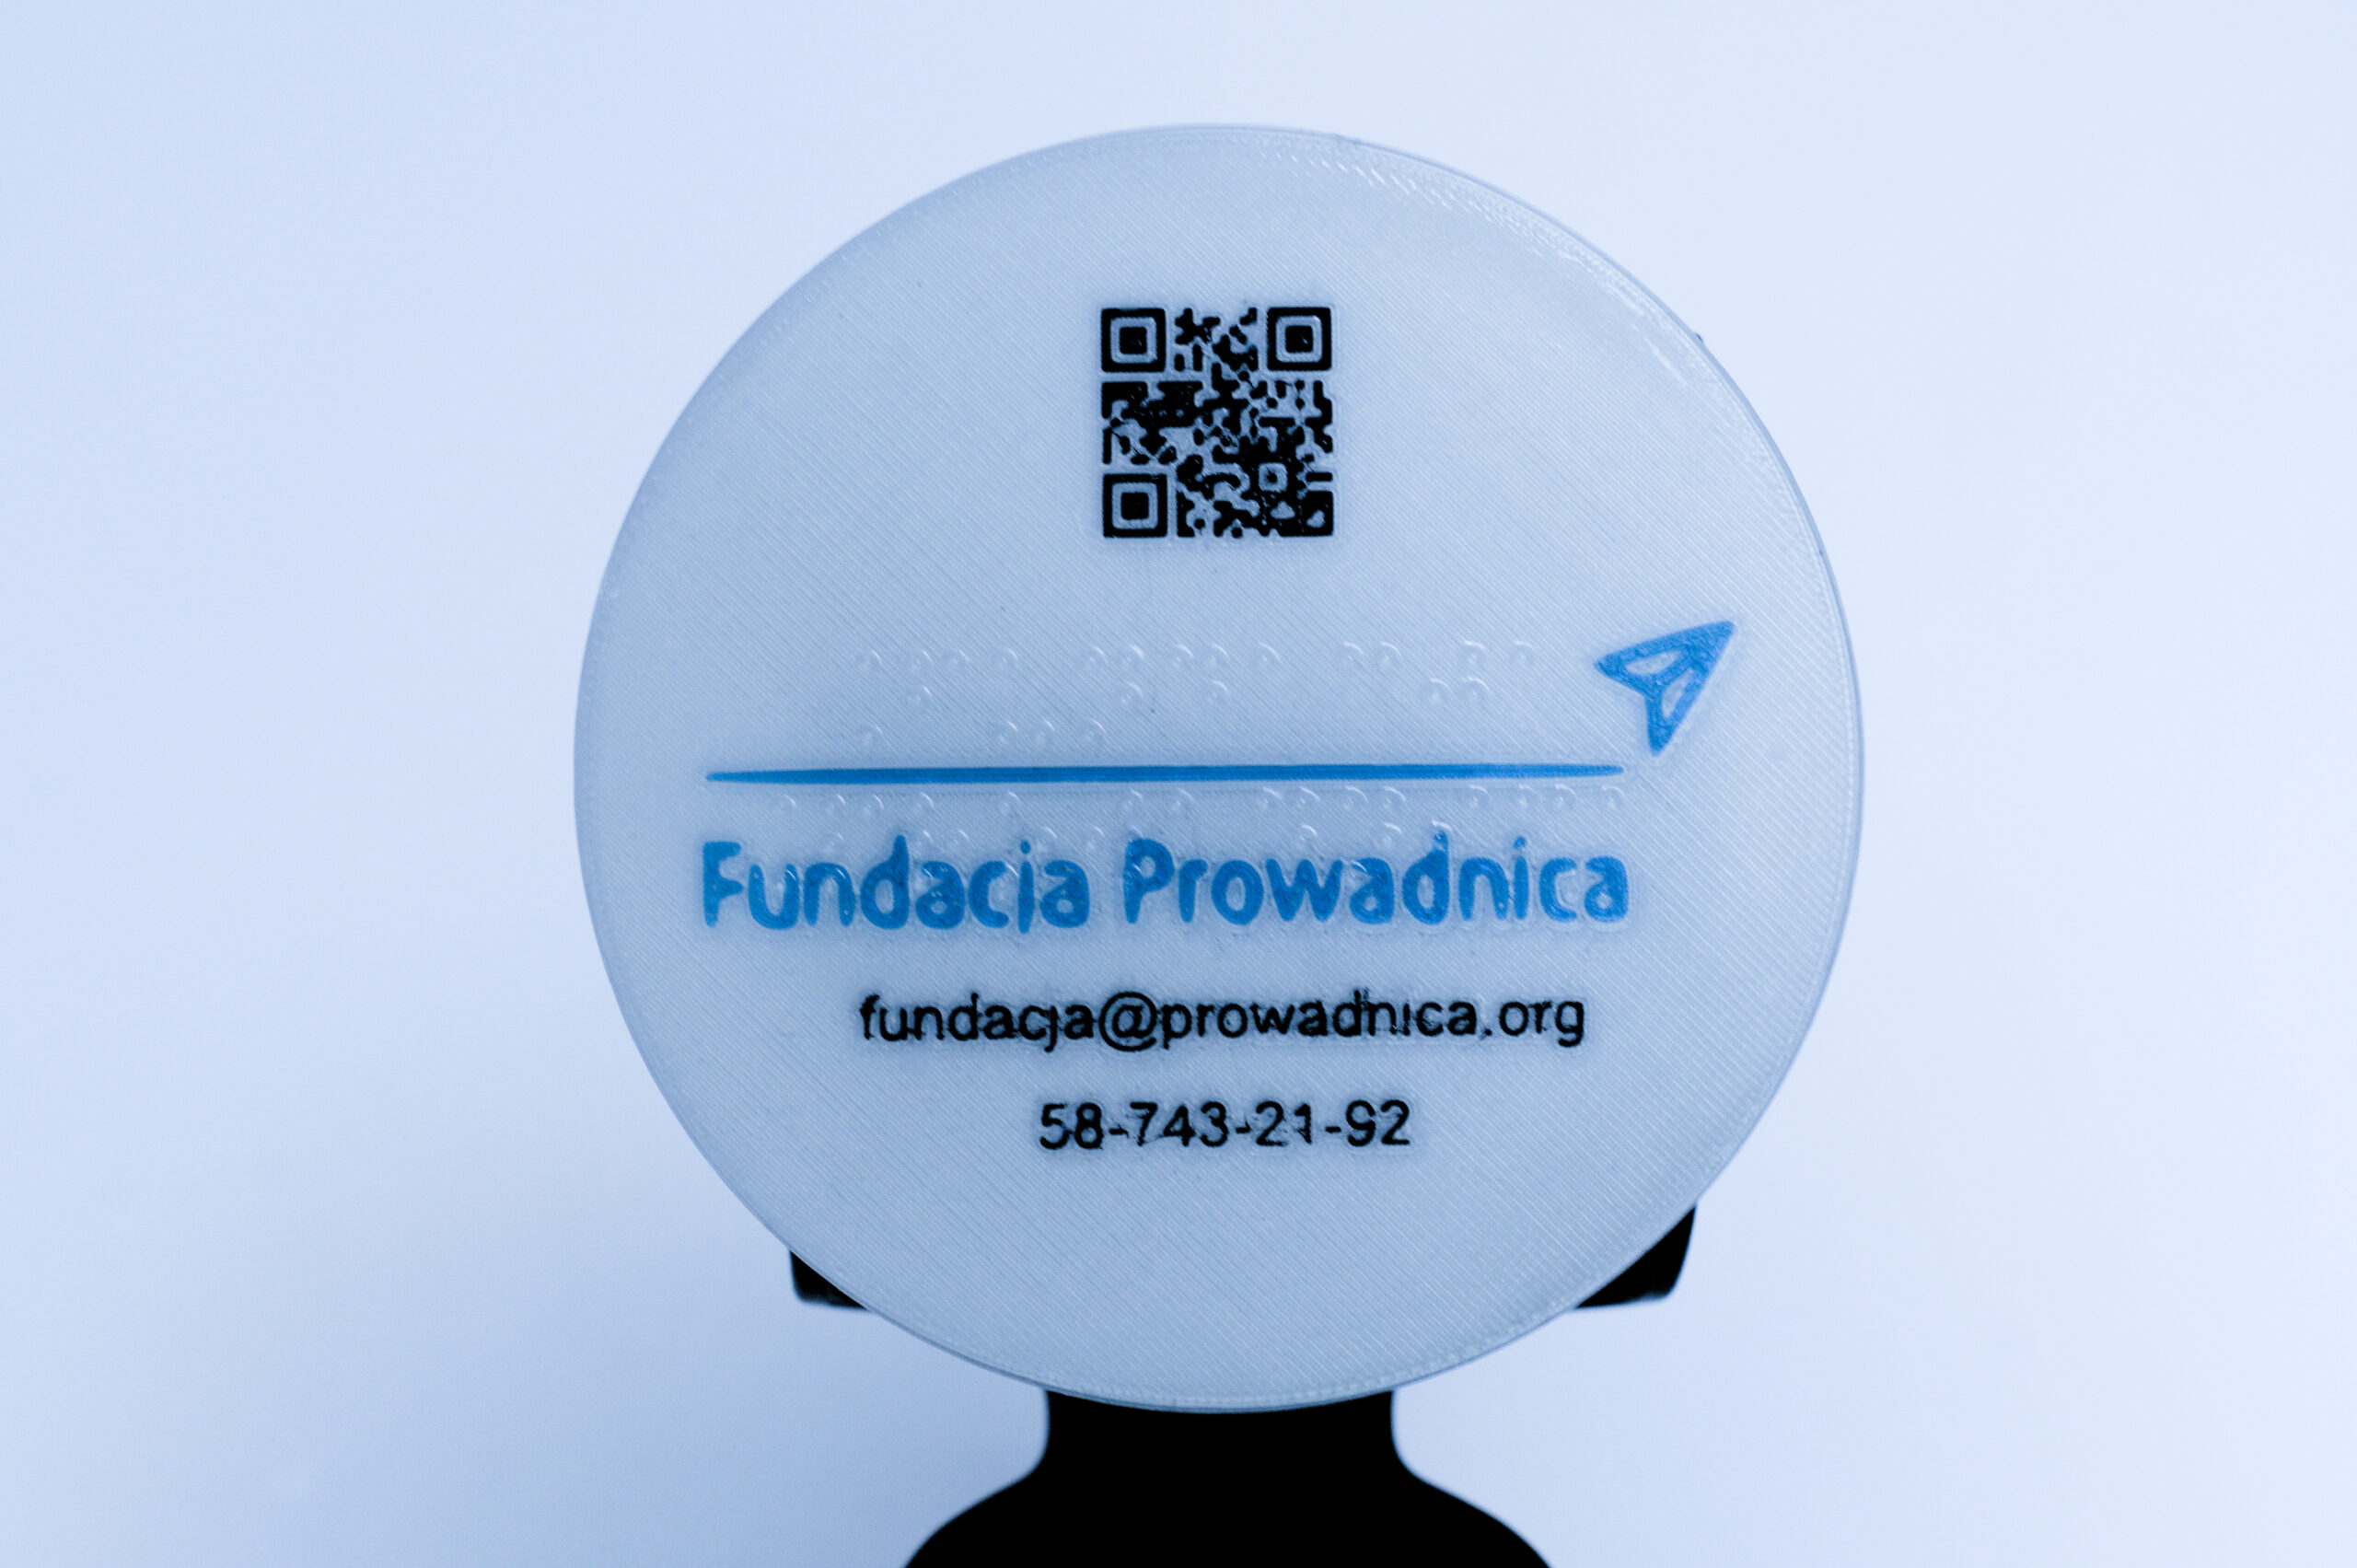 Koło z brajlowskim napisem Fundacja Prowadnica, w poddruku kod QR do strony Fundacji, logo i dane kontaktowe